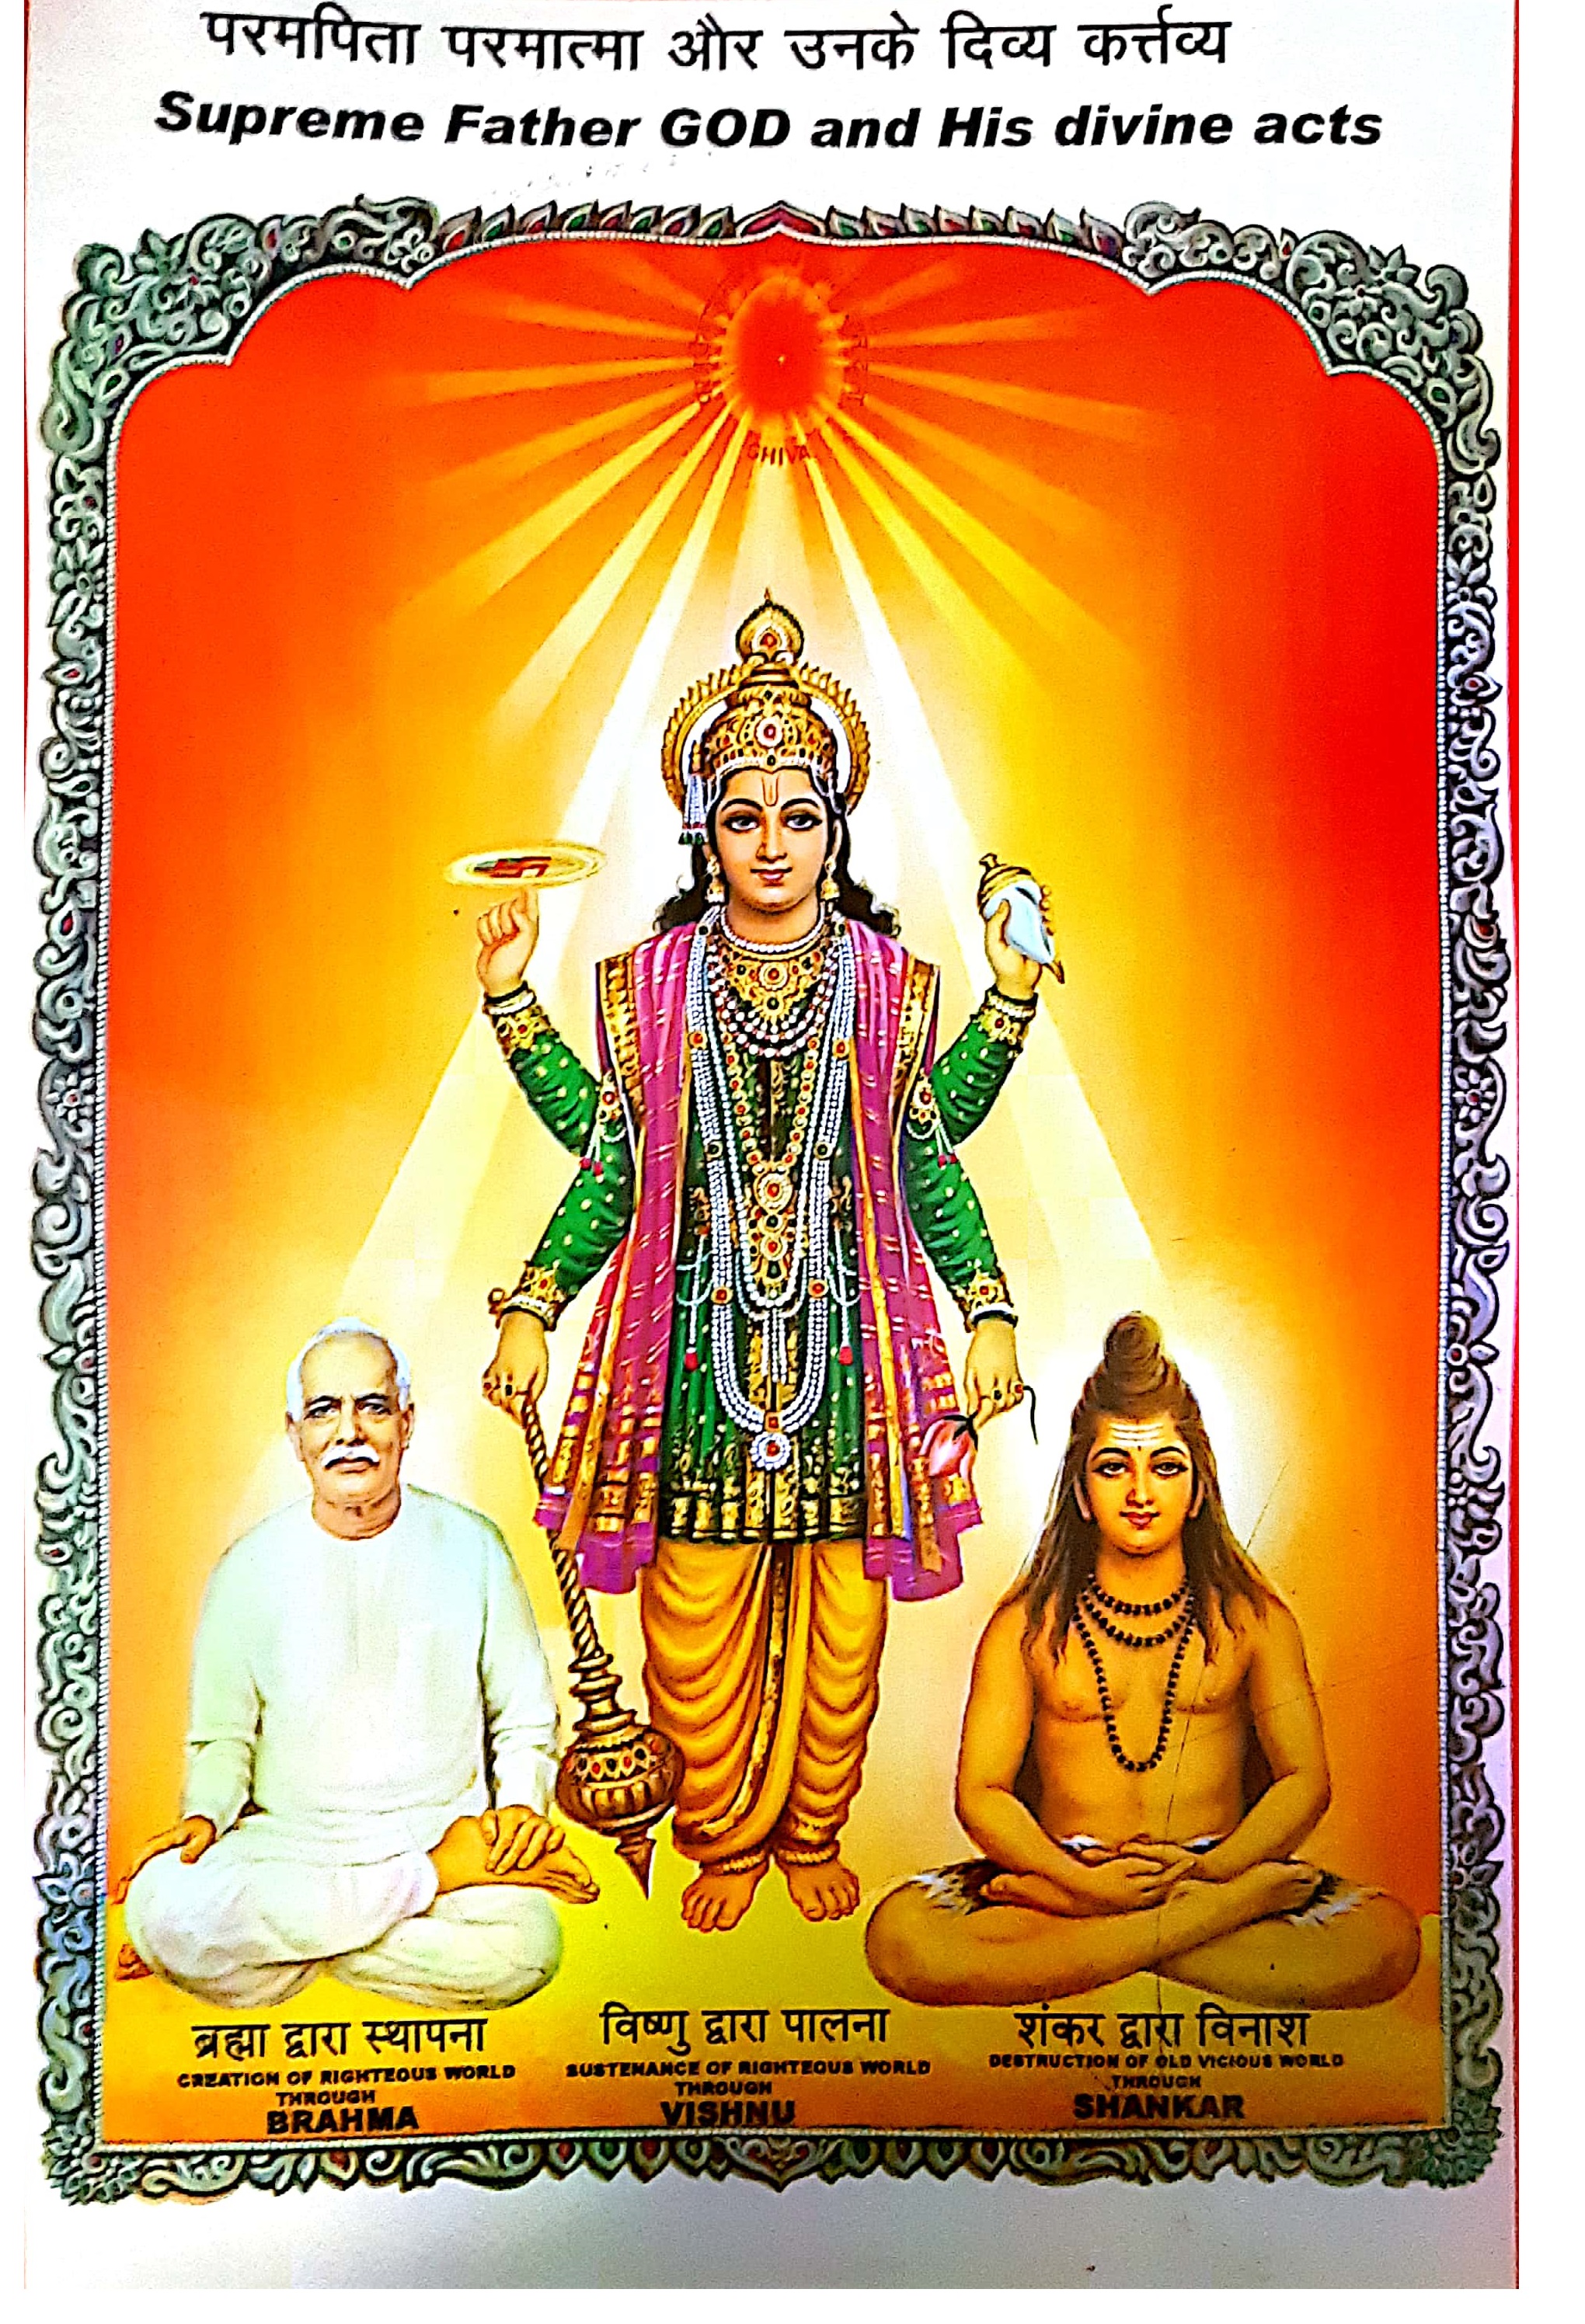 Om Shanti,Brahma kumaris